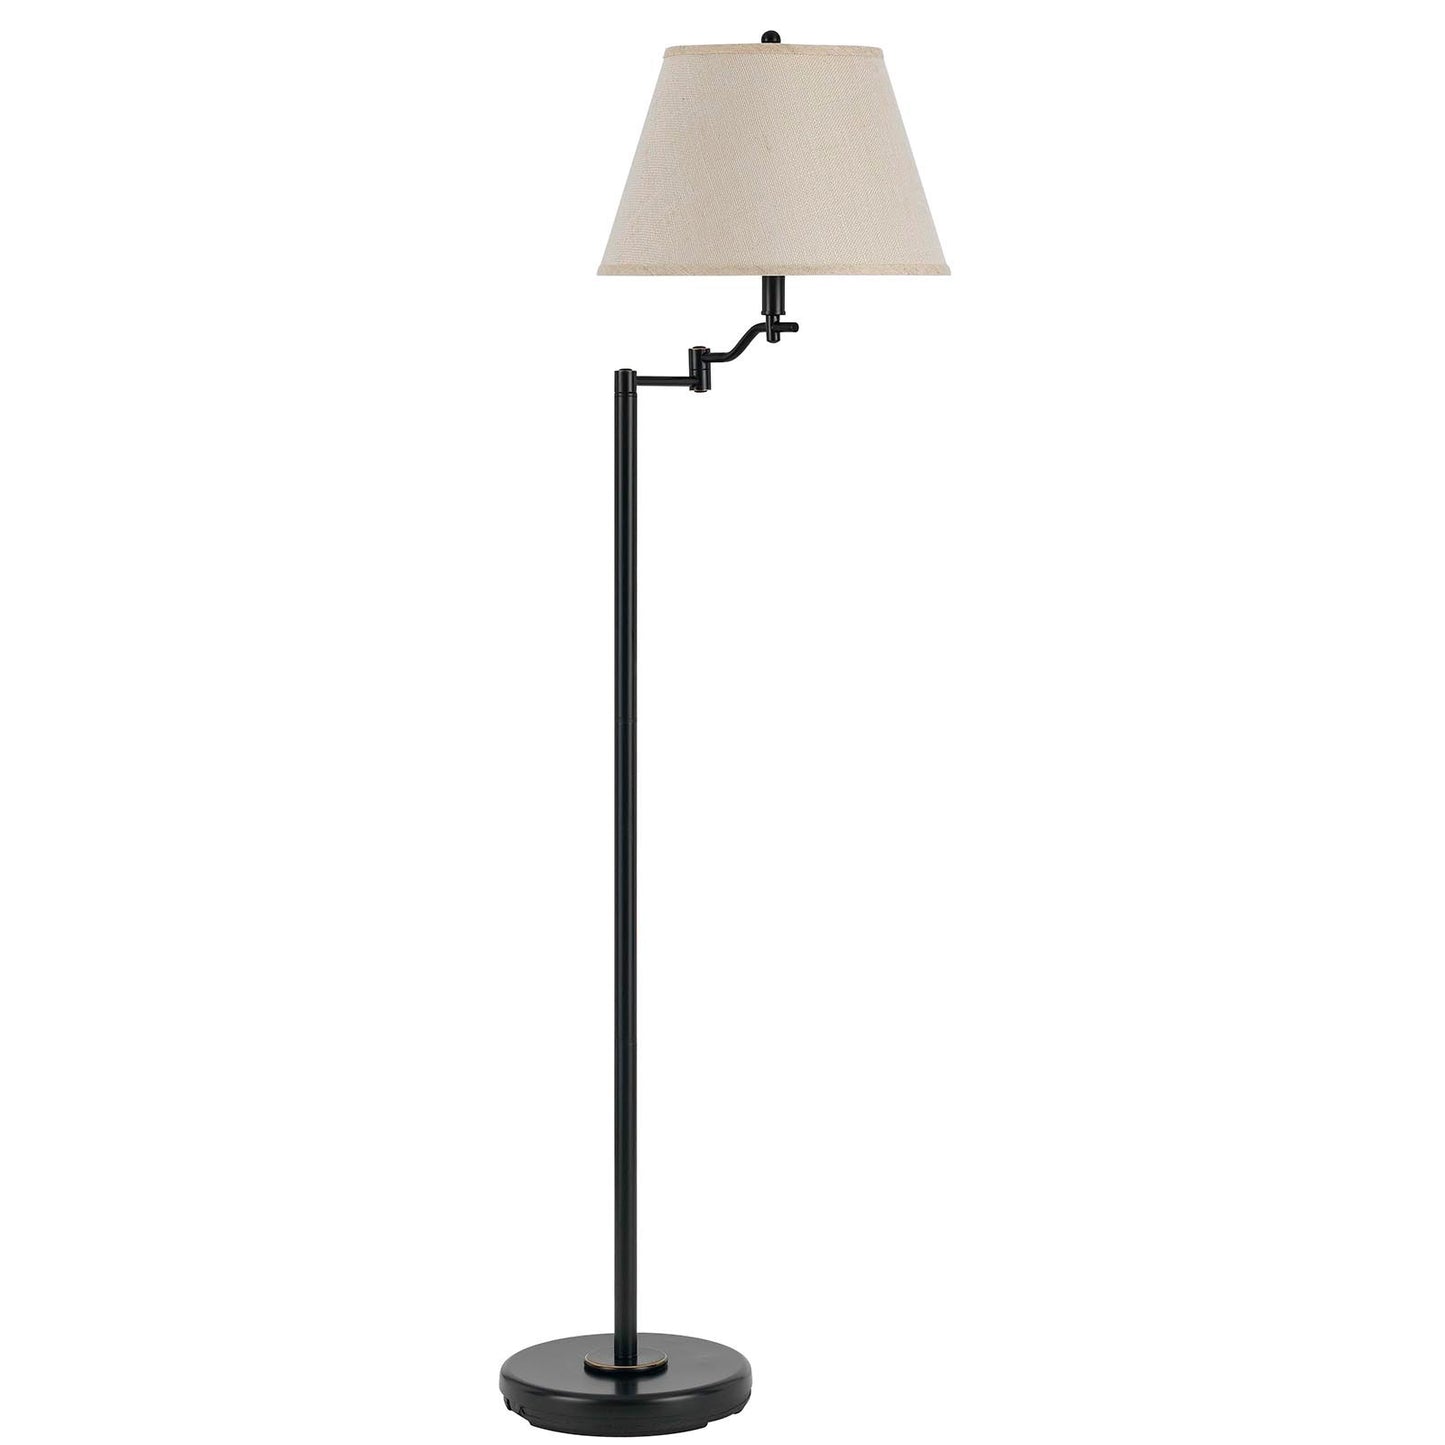 60" Bronze Swing Arm Floor Lamp With Beige Empire Shade